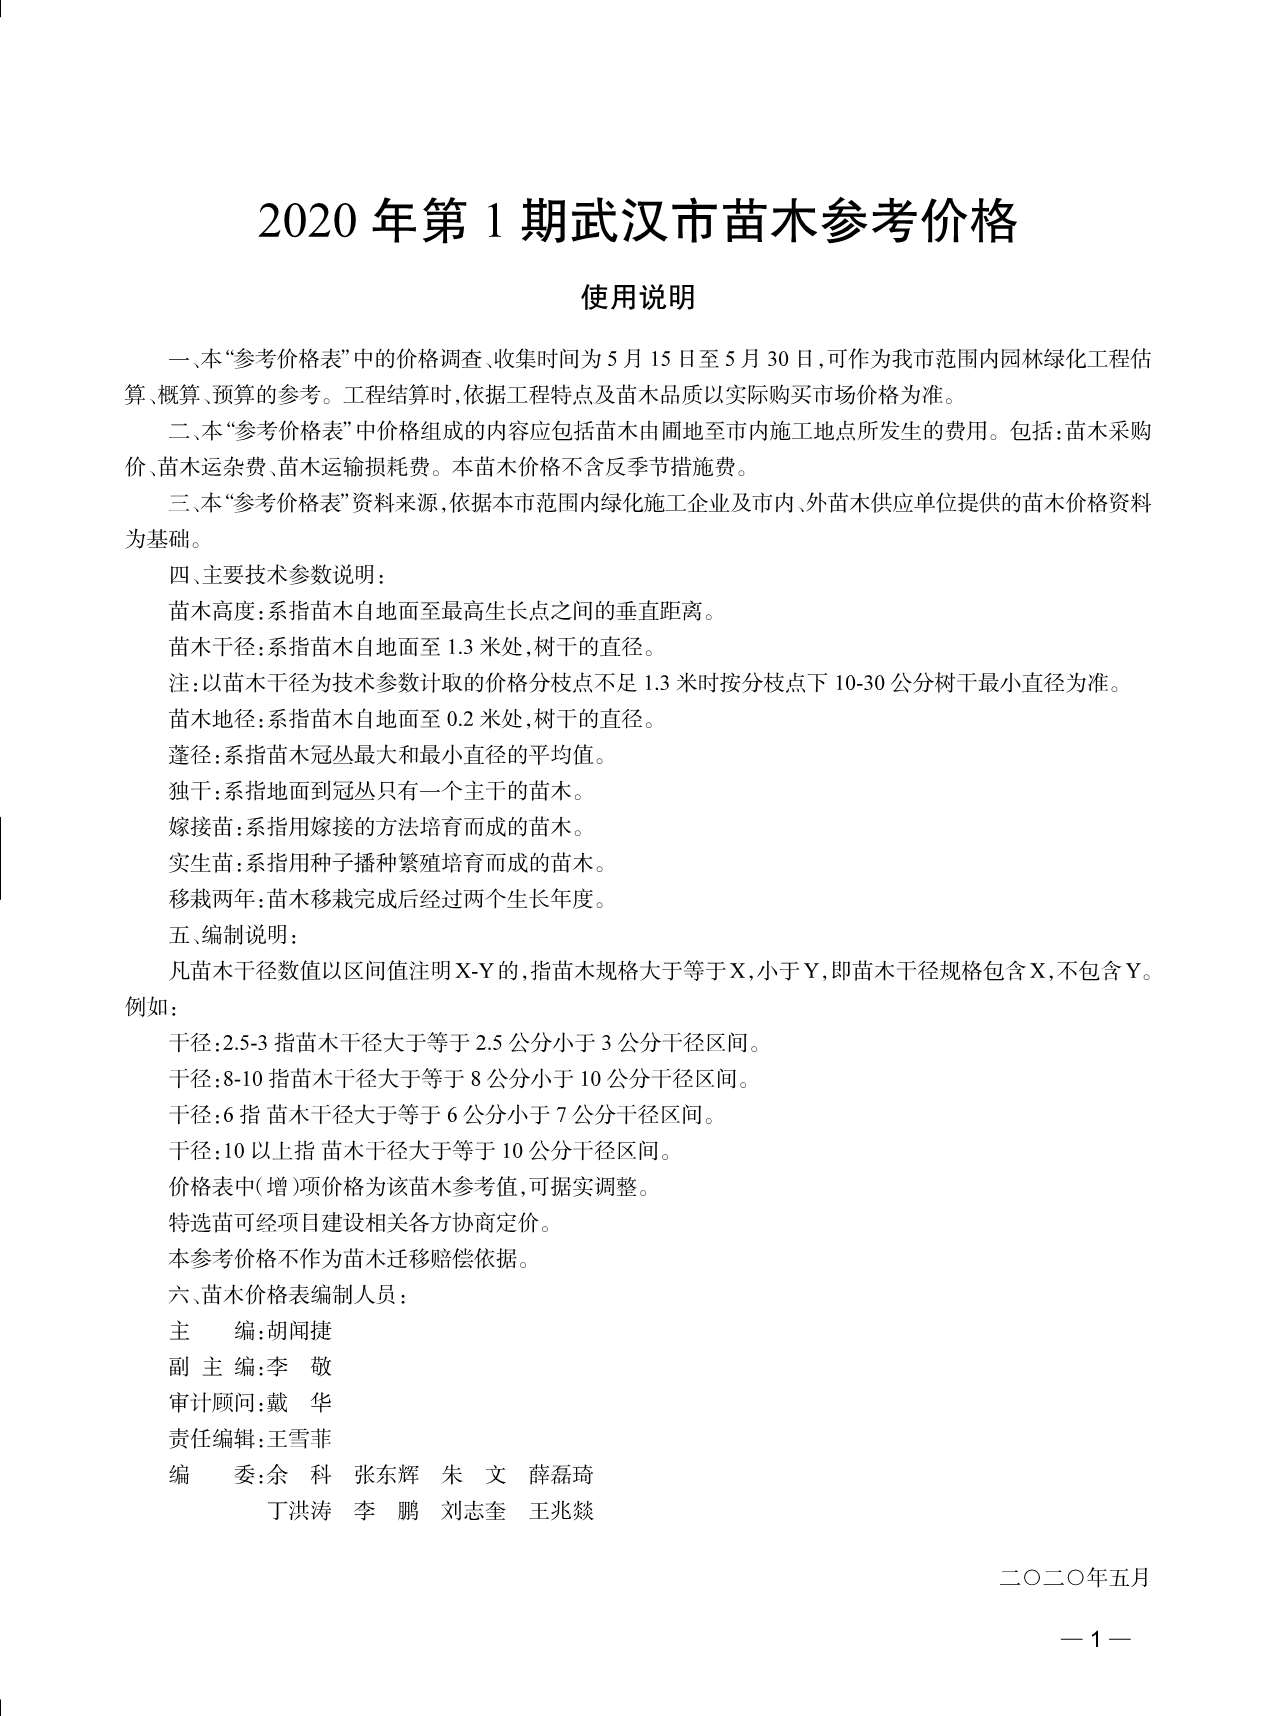 武汉市2020年1月园林信息价